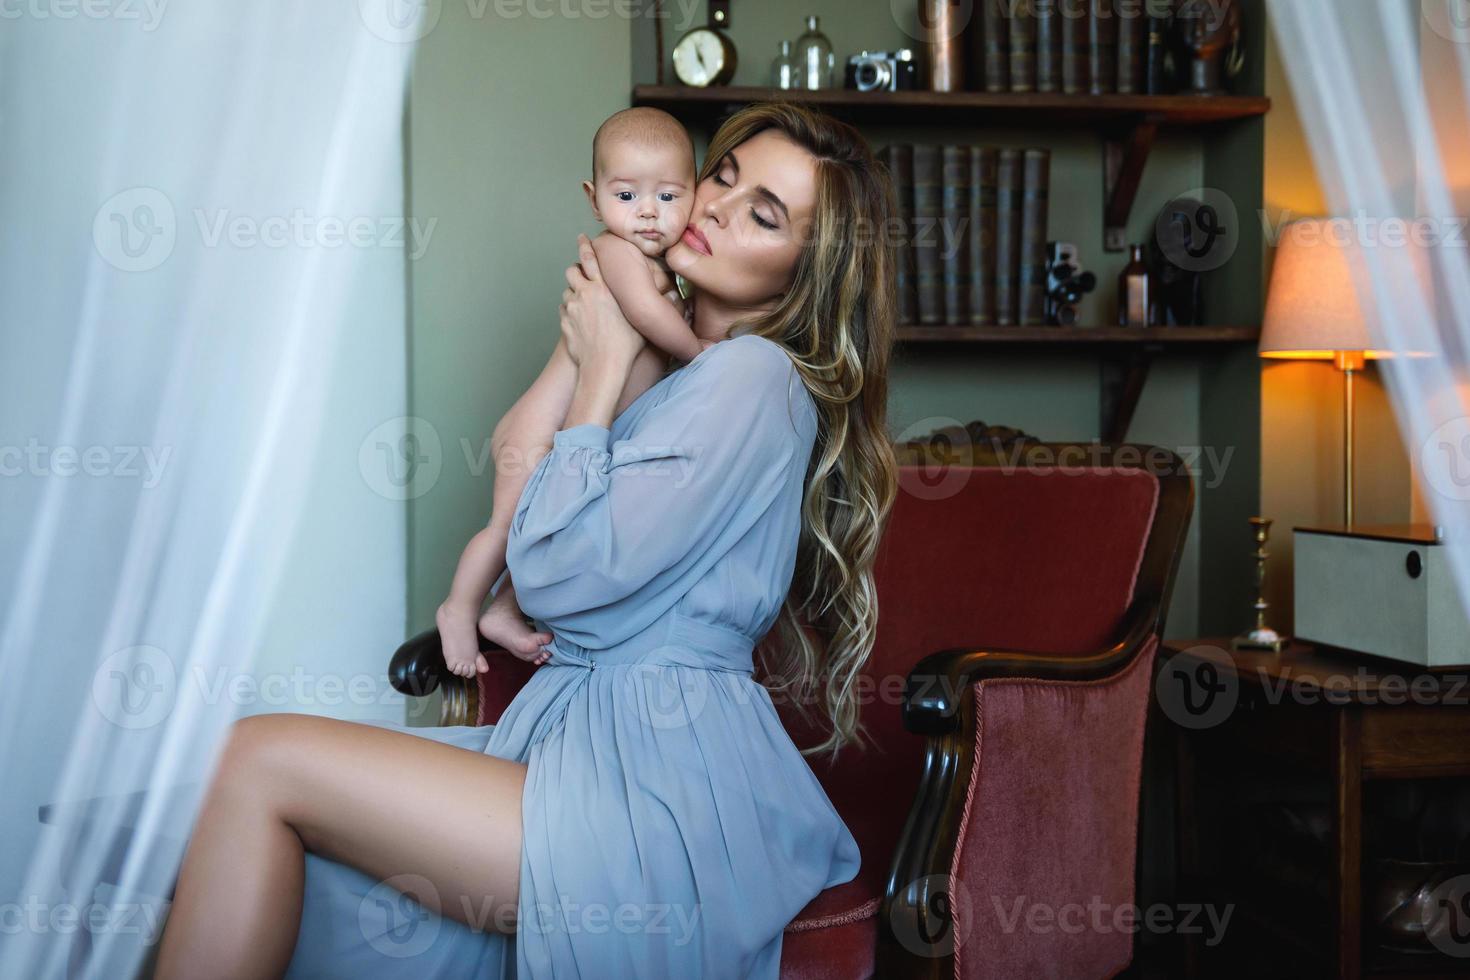 jovem linda mãe usando vestido cinza de luxo segurando seu bebê nas mãos foto